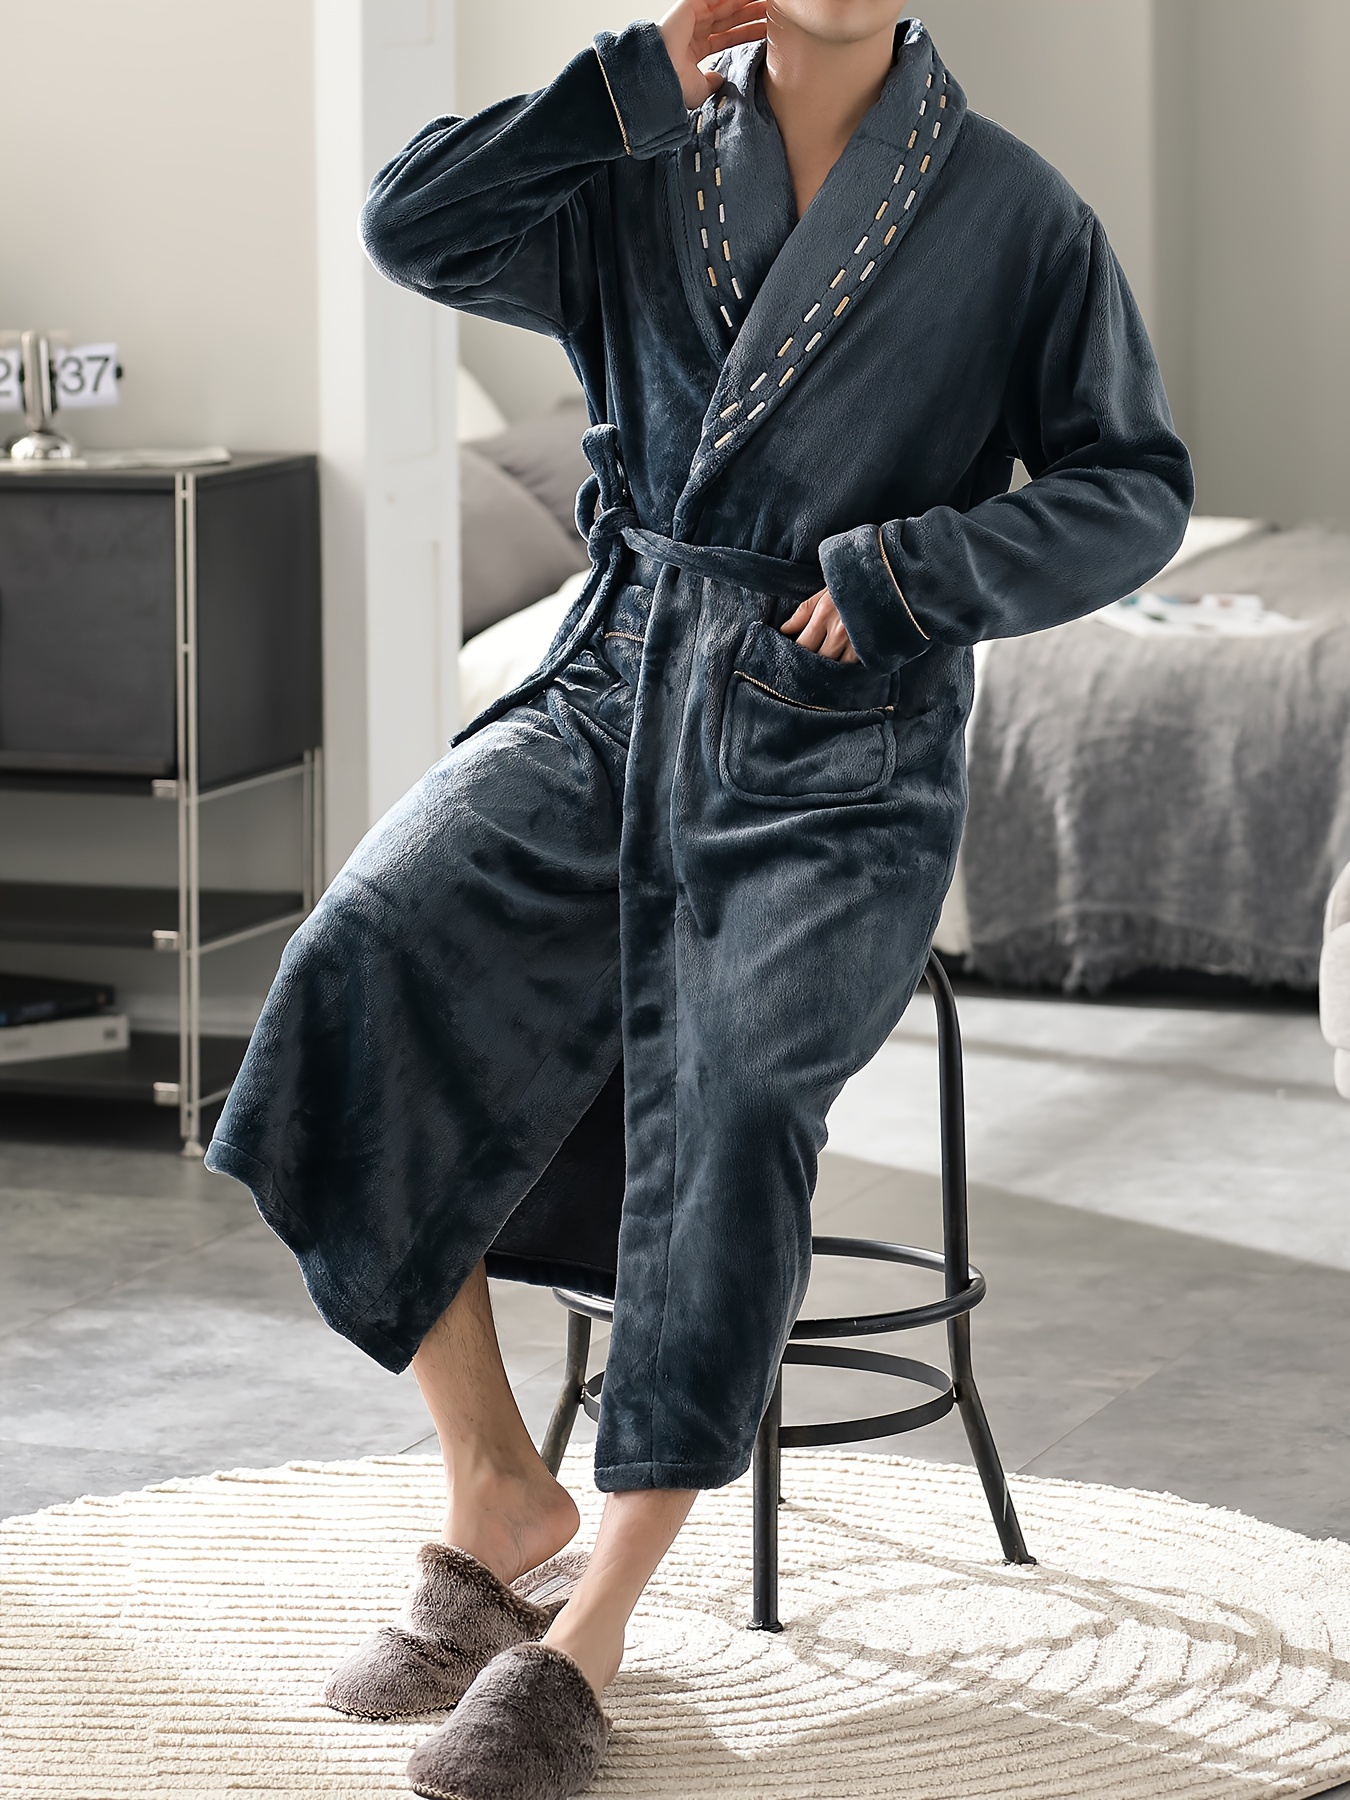  XFYJR Albornoz para hombre de invierno cálido y grueso alargado  de felpa bata de baño Kimono ropa de casa de manga larga pijama (color: BU,  tamaño: 5XL) : Ropa, Zapatos y